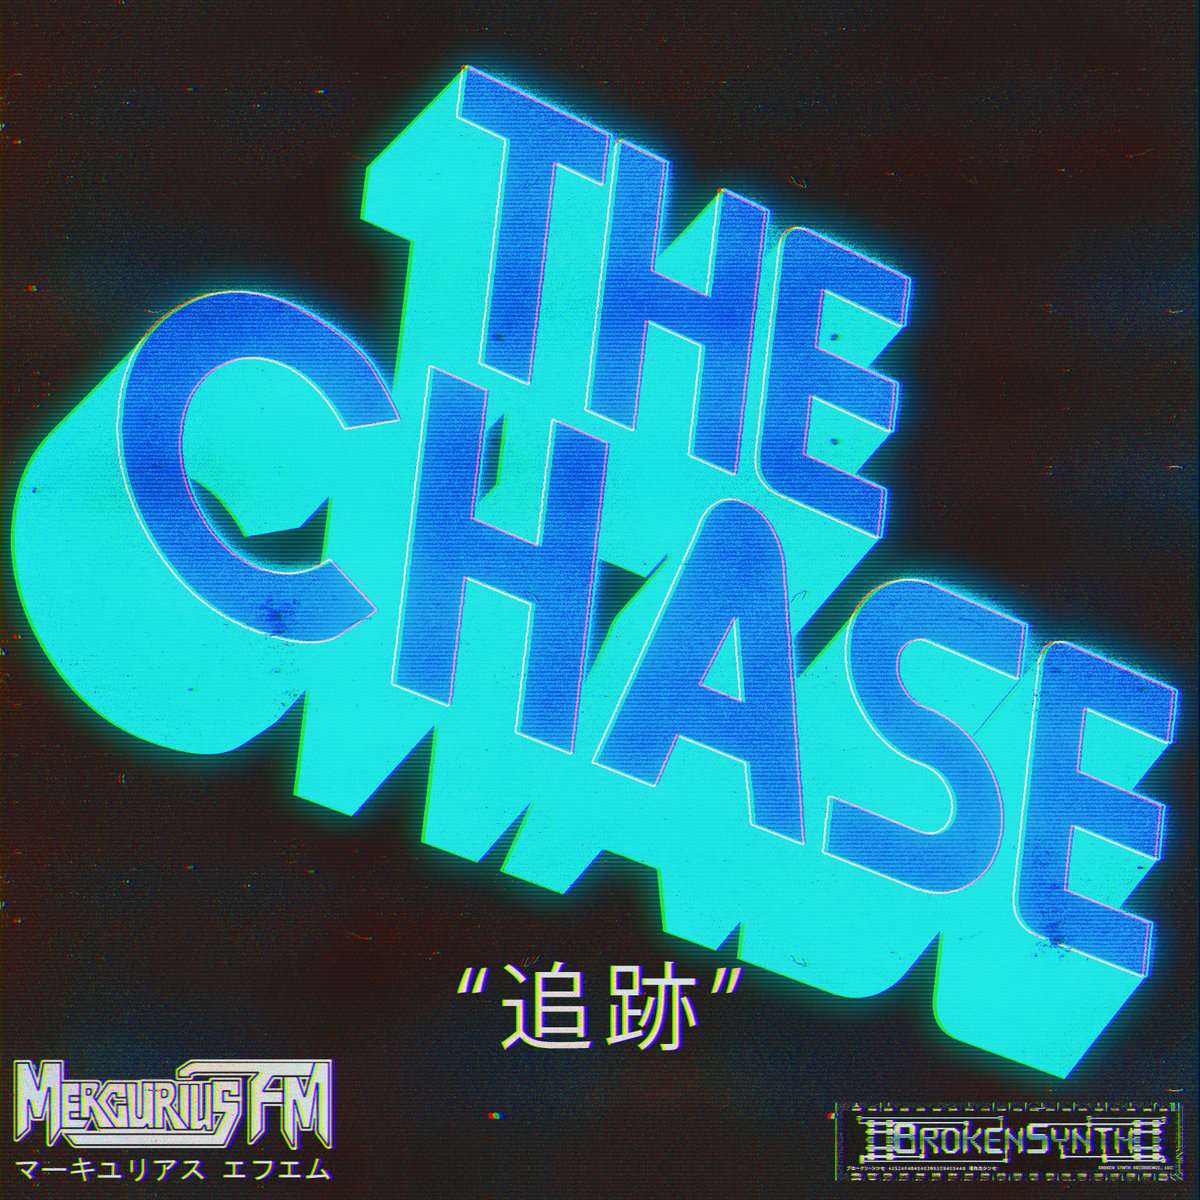 THE CHASE – MERCURIUS FM